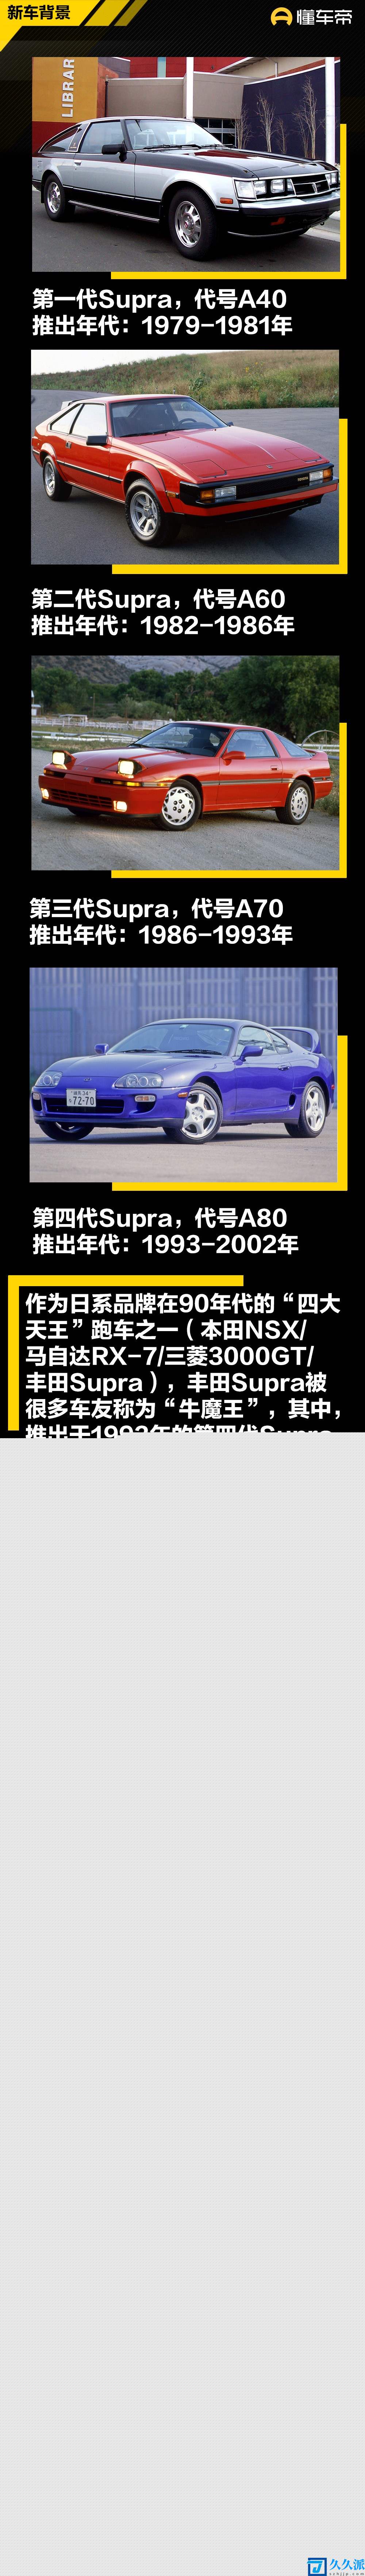 采用大量碳纤维部件全新丰田Supra特别版官图发布